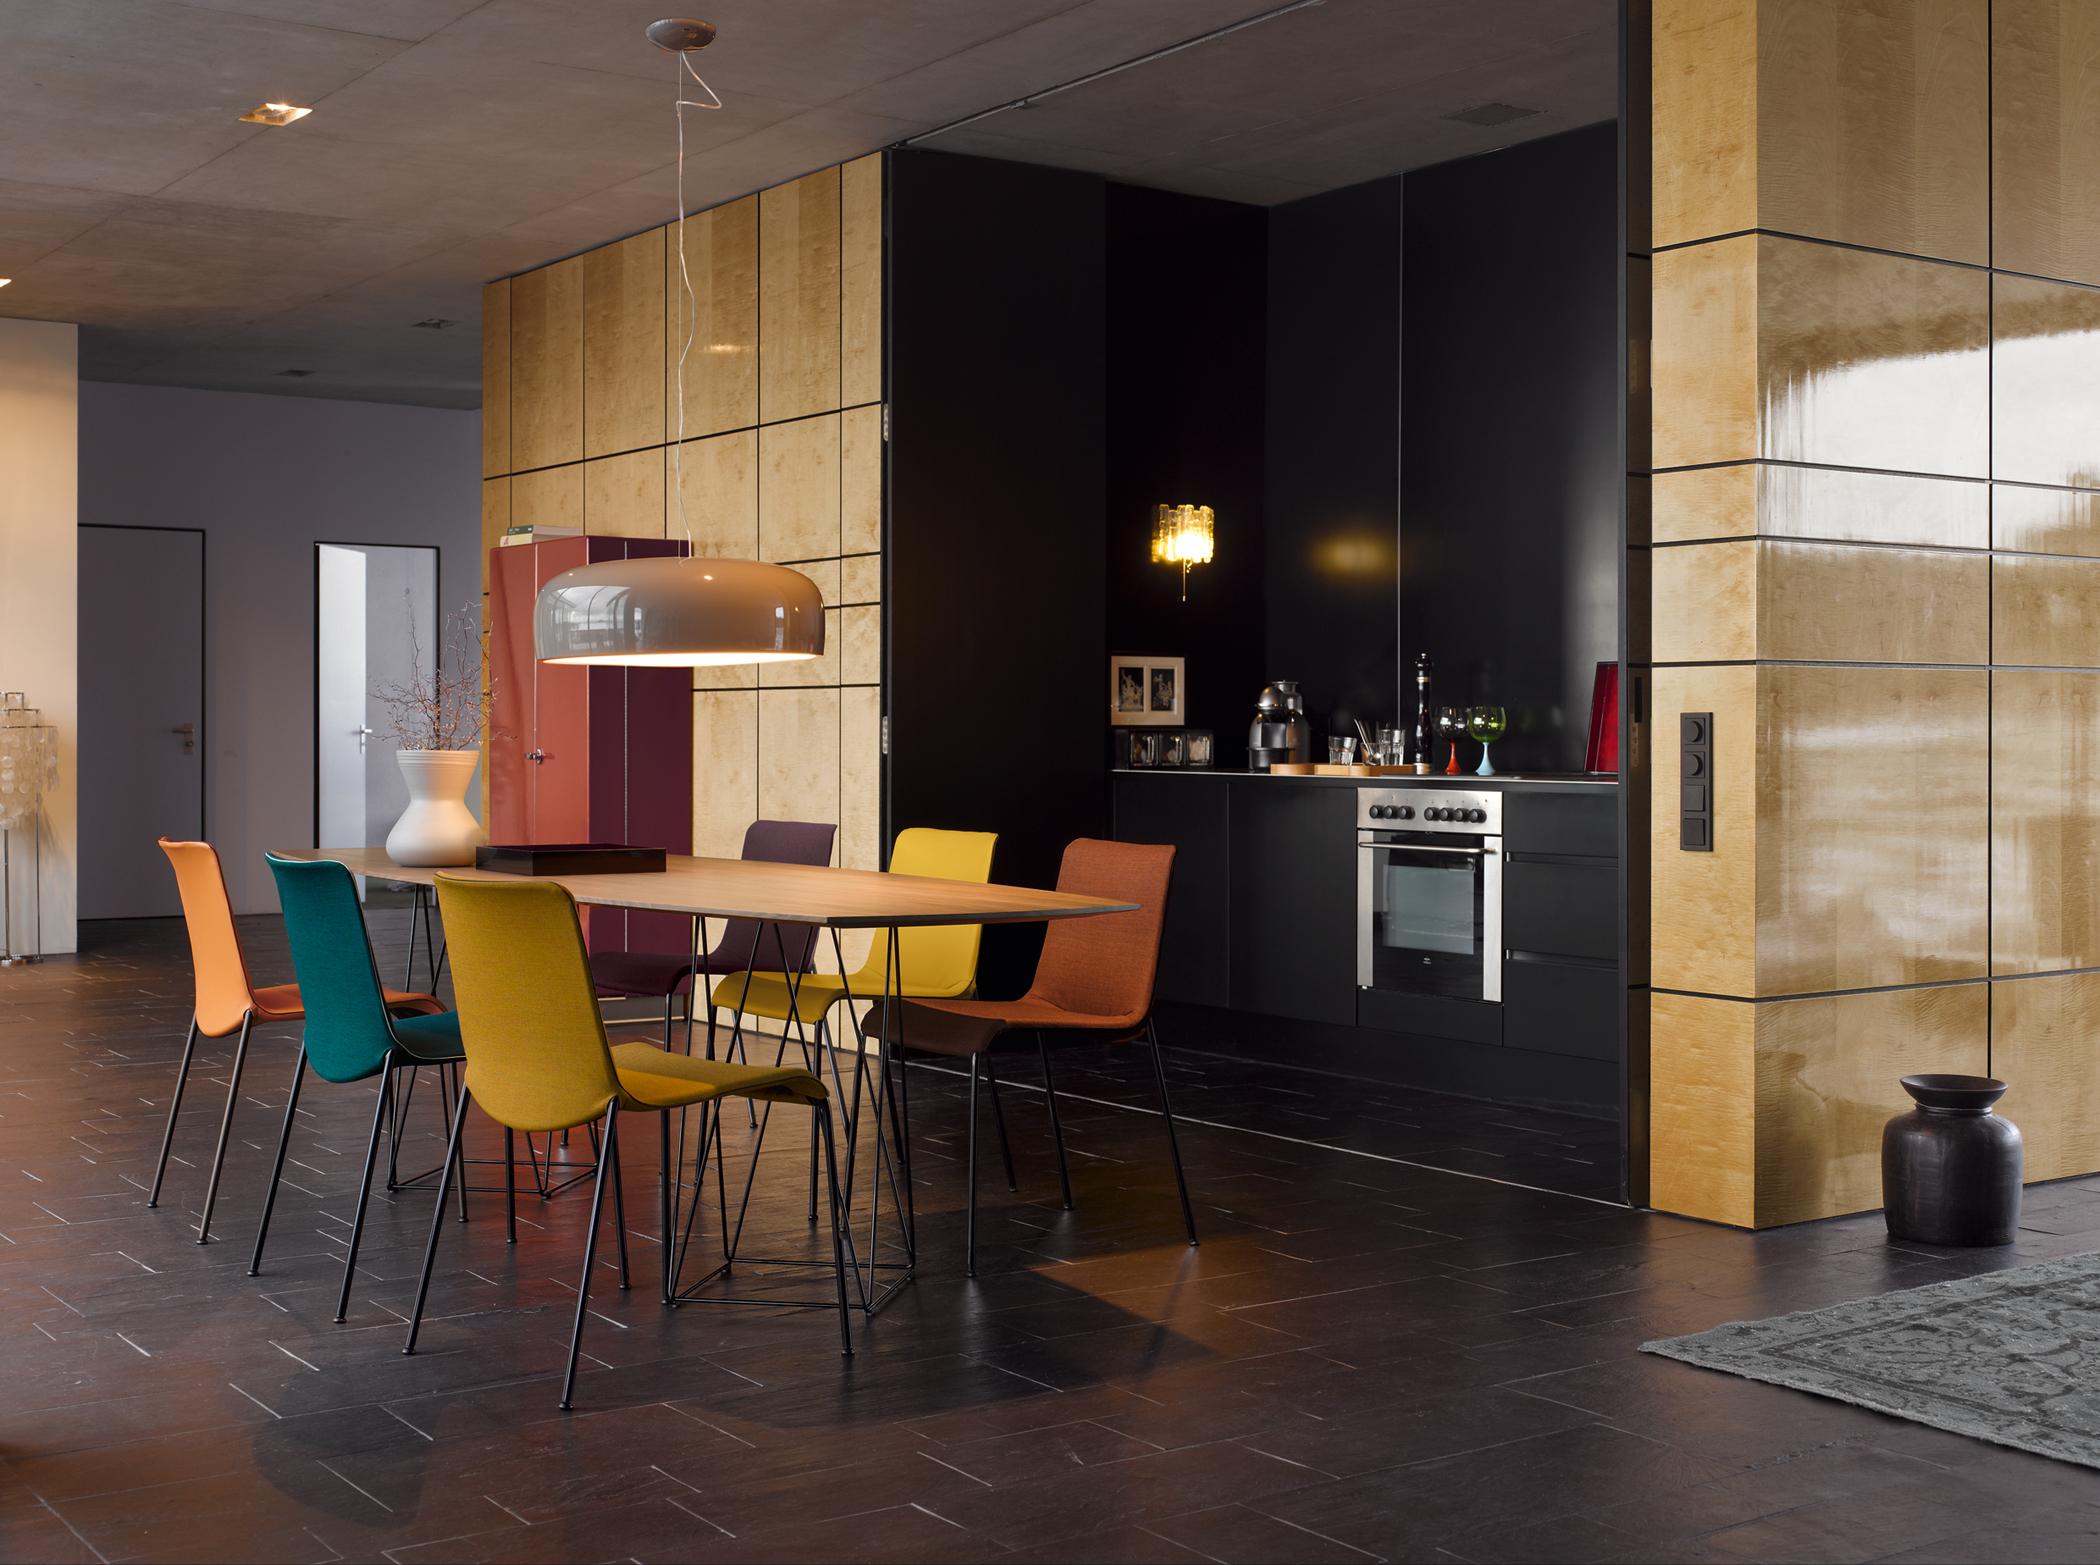 Moderne Küche mit warmen Farben #stuhl #küche #esstisch #wandgestaltung #pendelleuchte #wandgestaltungküche ©Walter Knoll, Designer: Claudio Bellini